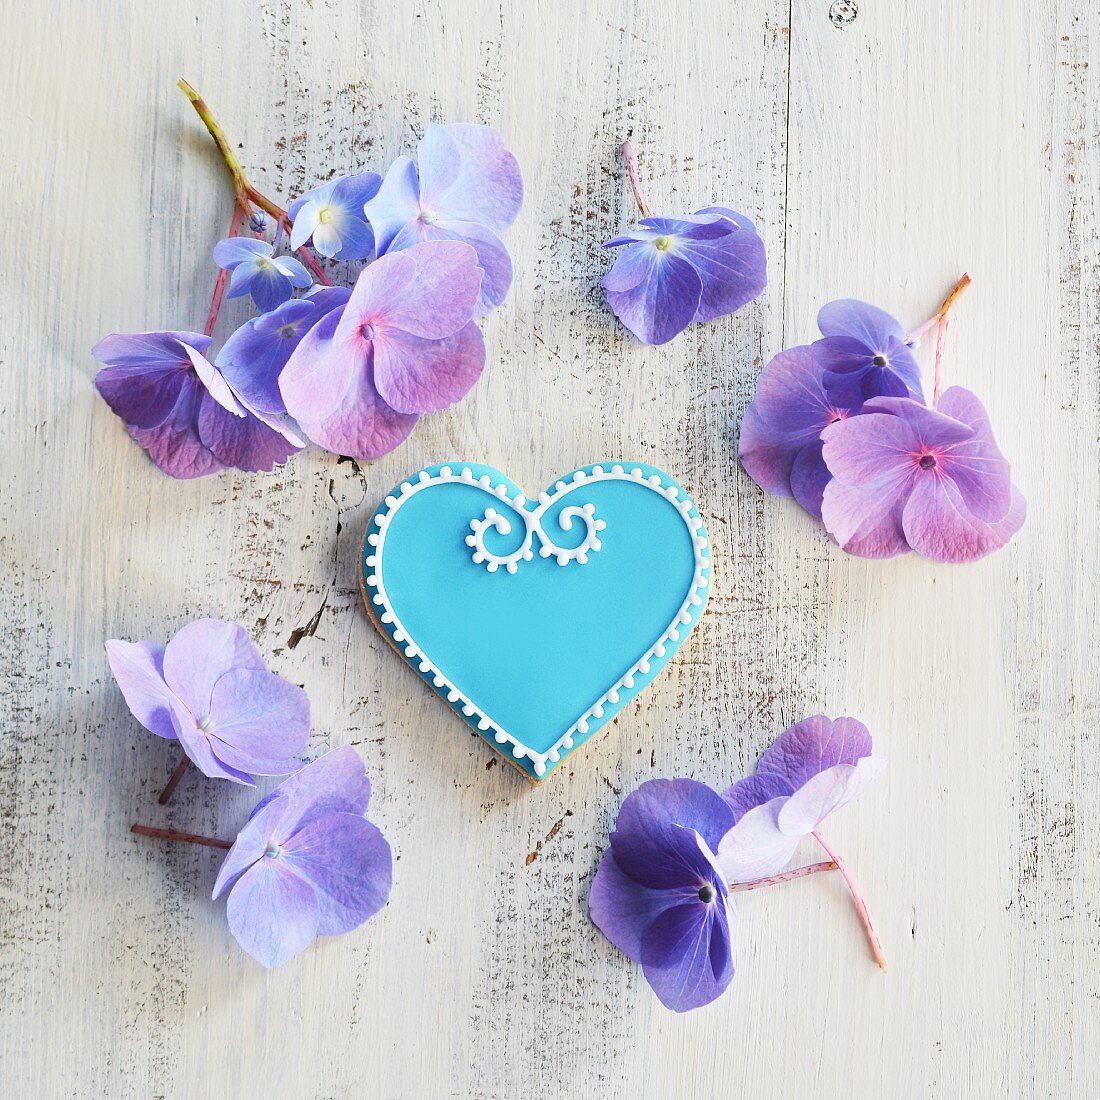 Keks in Herzform mit blauem und weißem Zuckerguss dekoriert, umgeben von Blumen